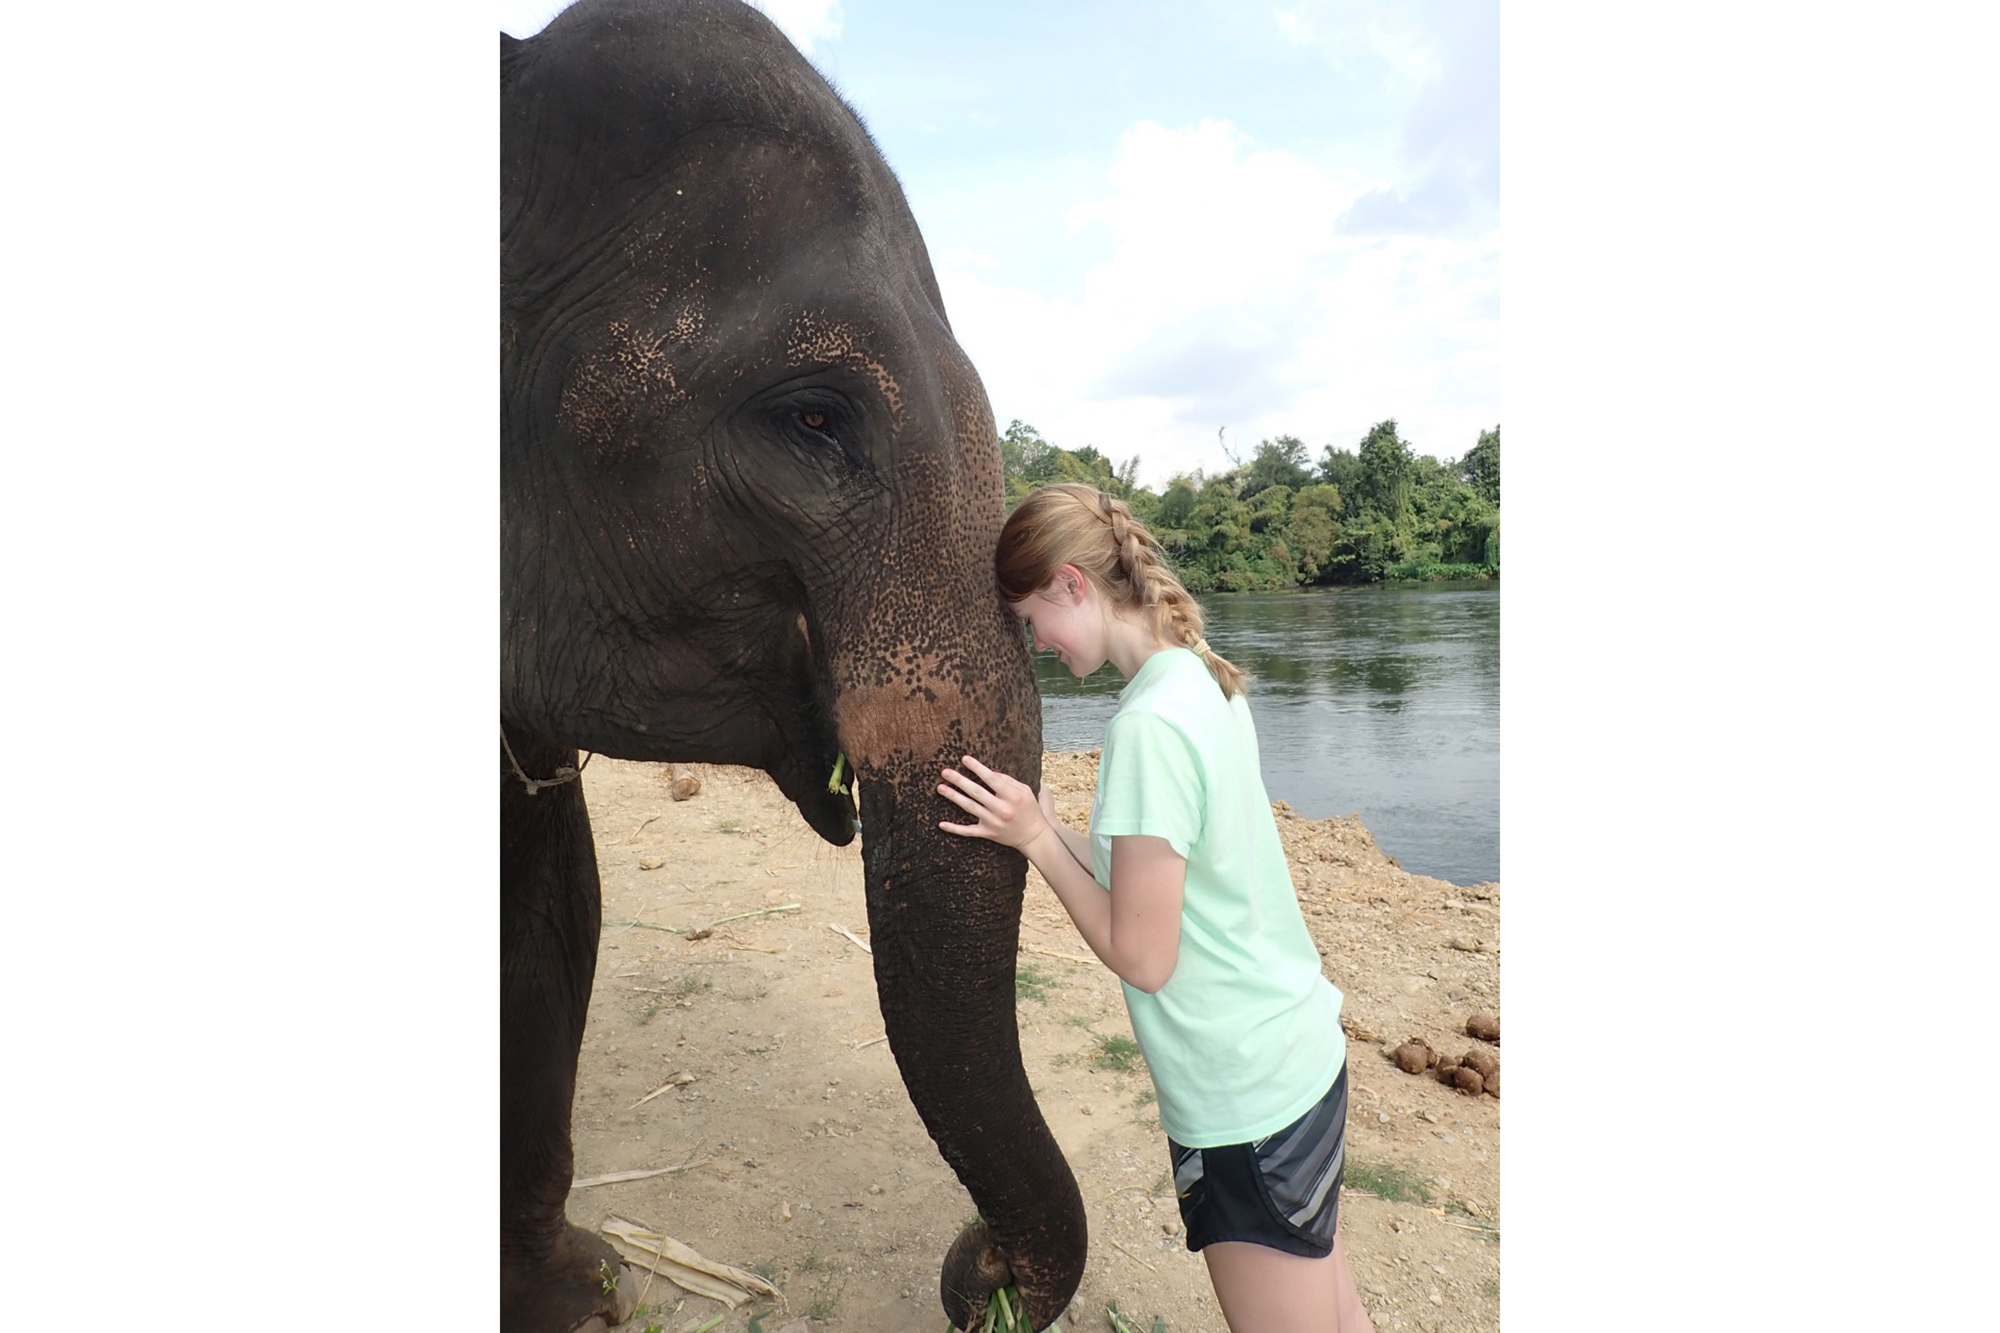 Elizabeth Fahrmeier and an elephant